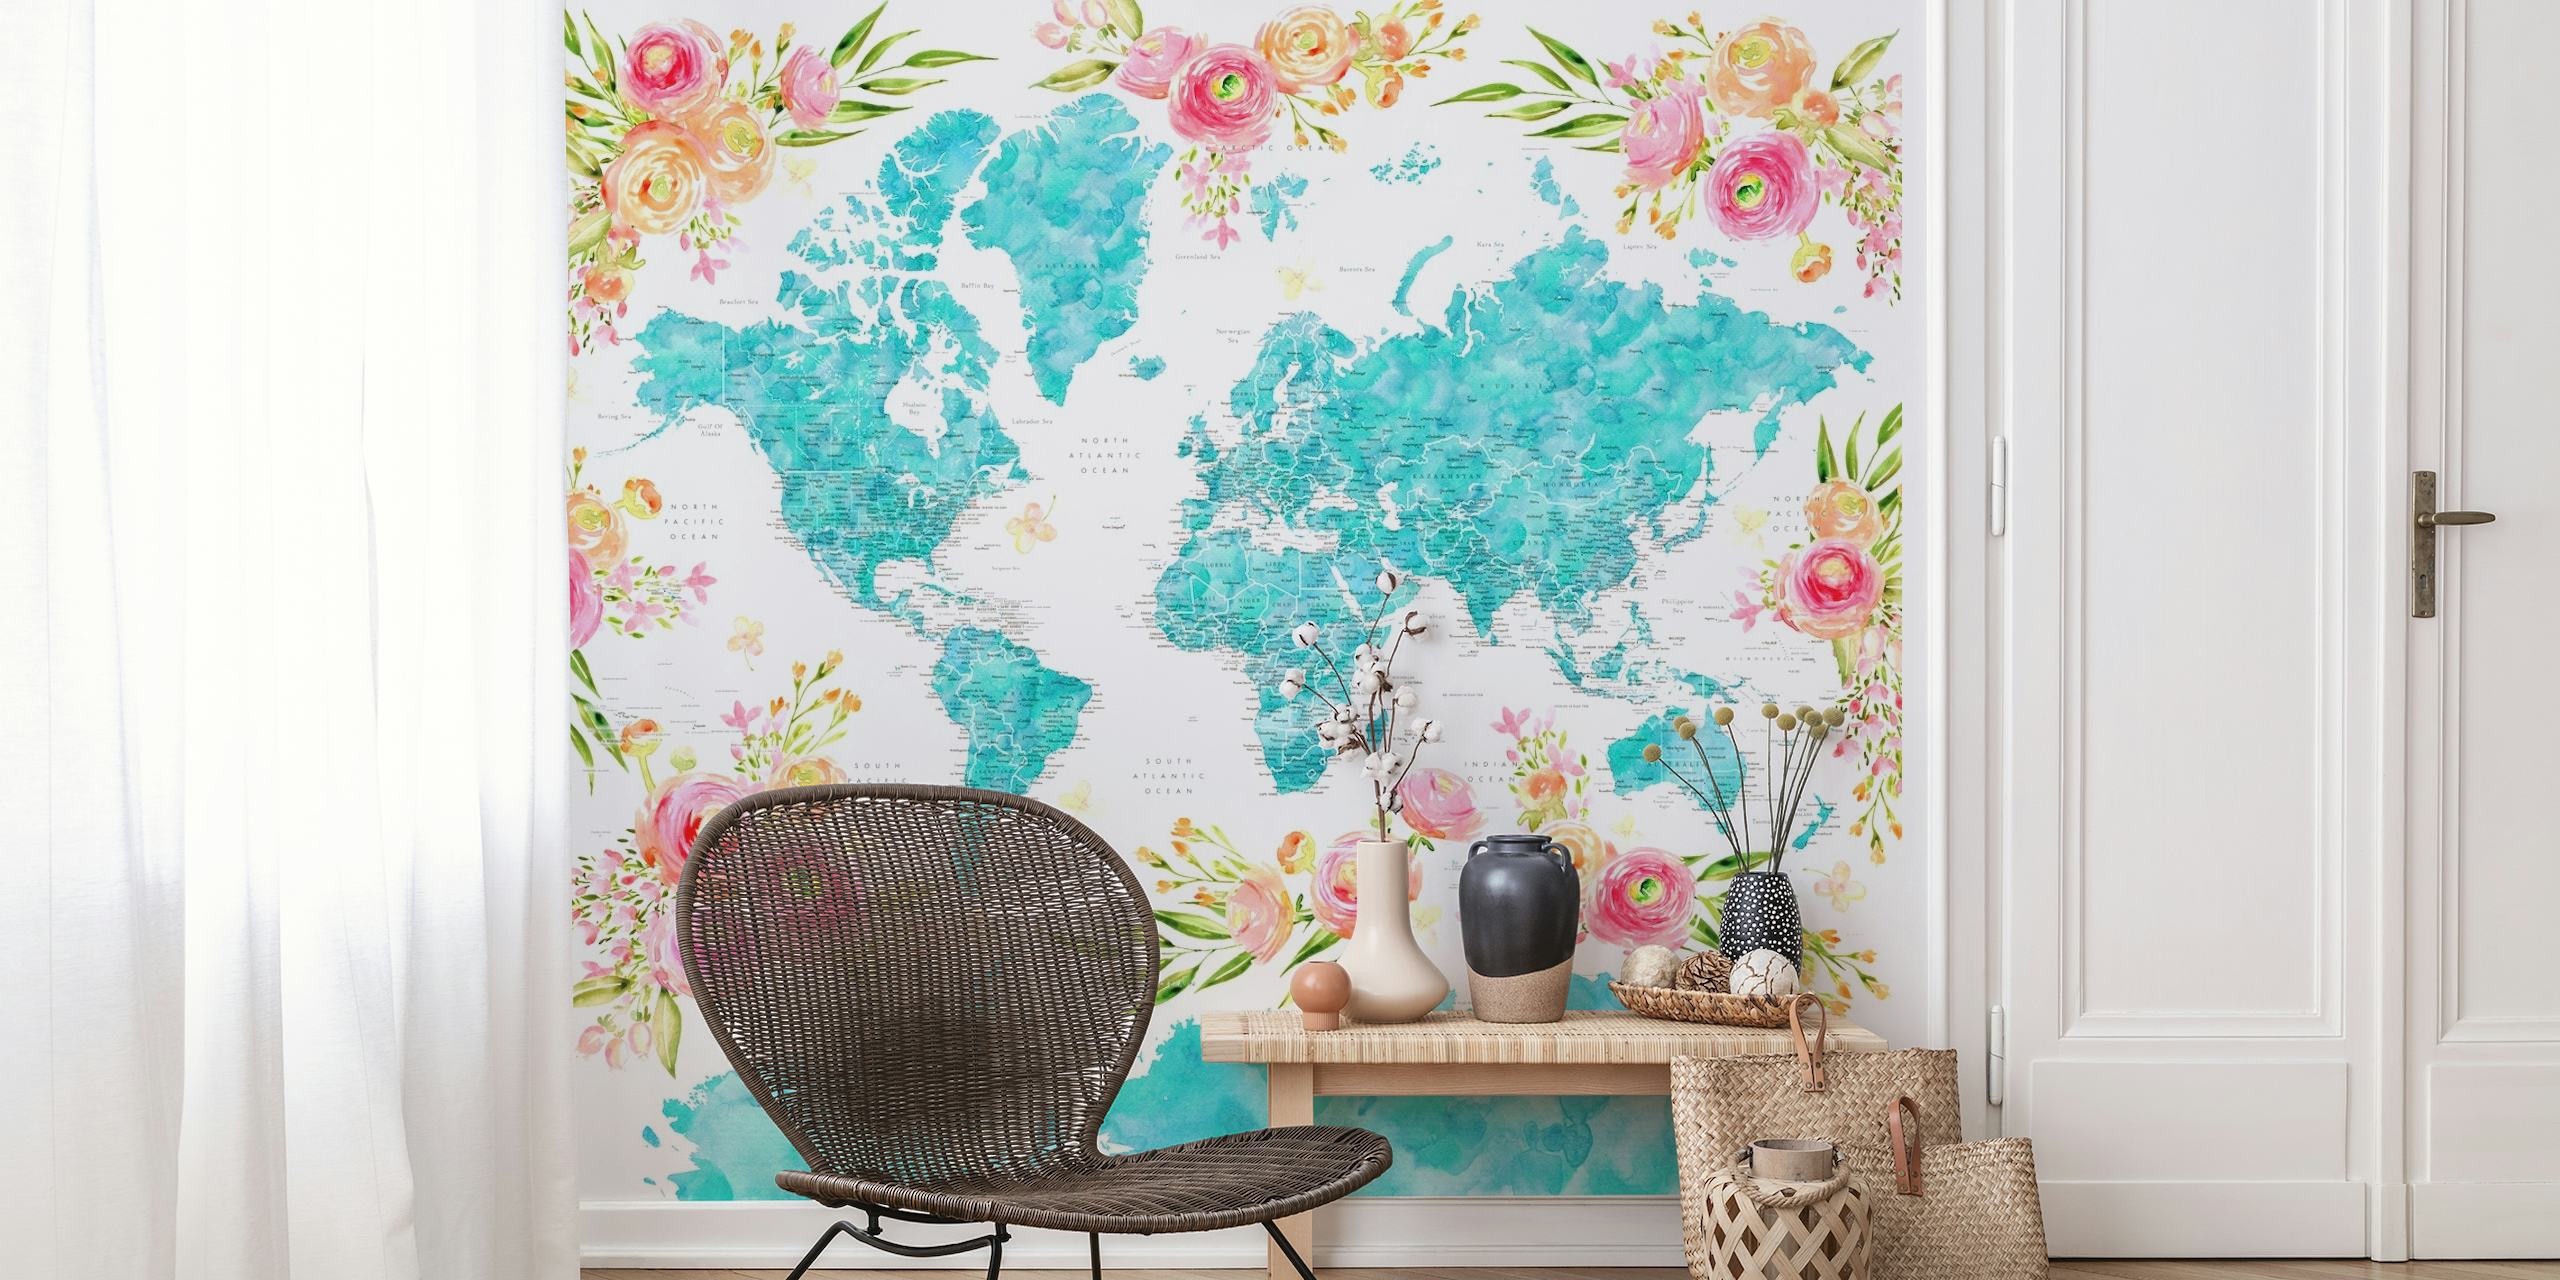 Barevná fototapeta mapa světa s květinovými vzory zdobící kontinenty